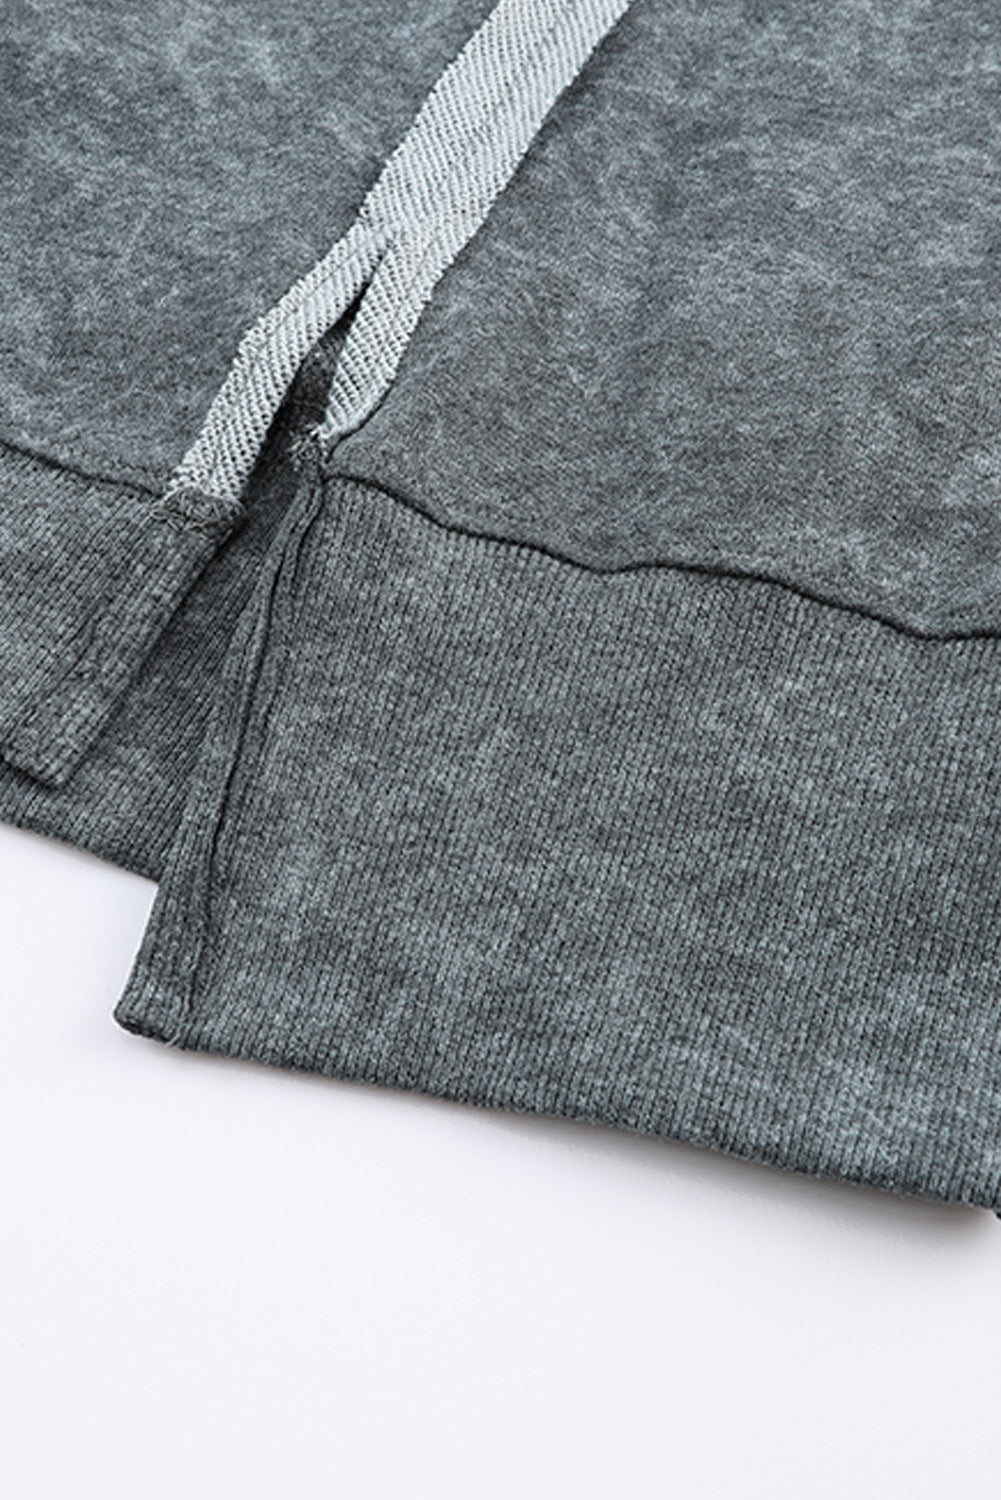 Sweat-shirt gris délavé à l'acide, coupe décontractée, avec coutures et fentes